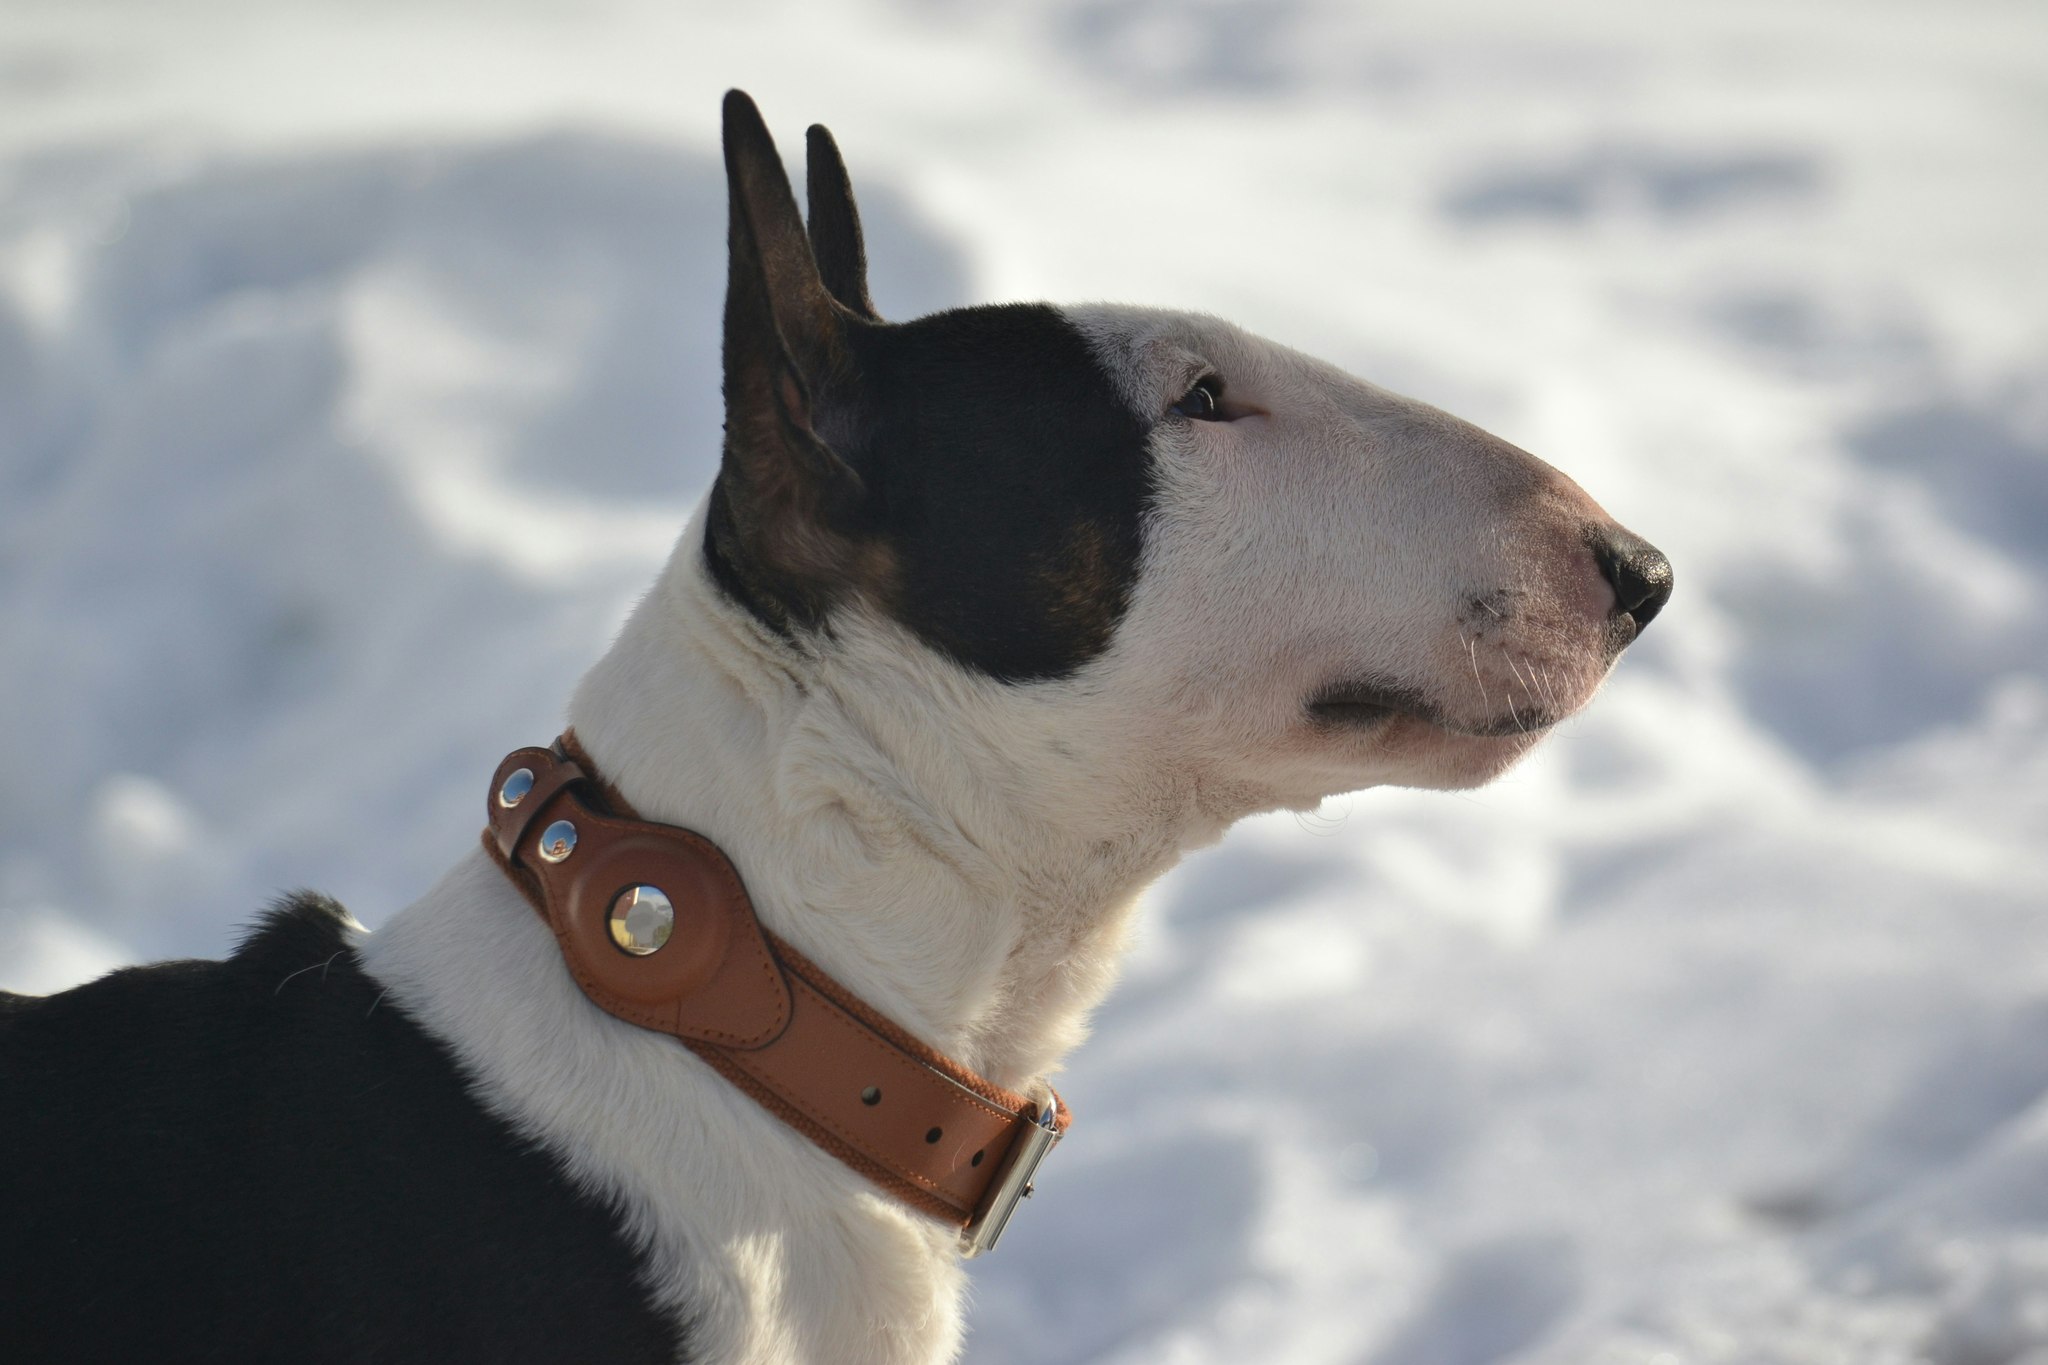 Hundhalsband för Apple AirTag - Bäst på marknaden  Djurtoppen - Djurtoppen  - Prisvärda produkter till hund och katt